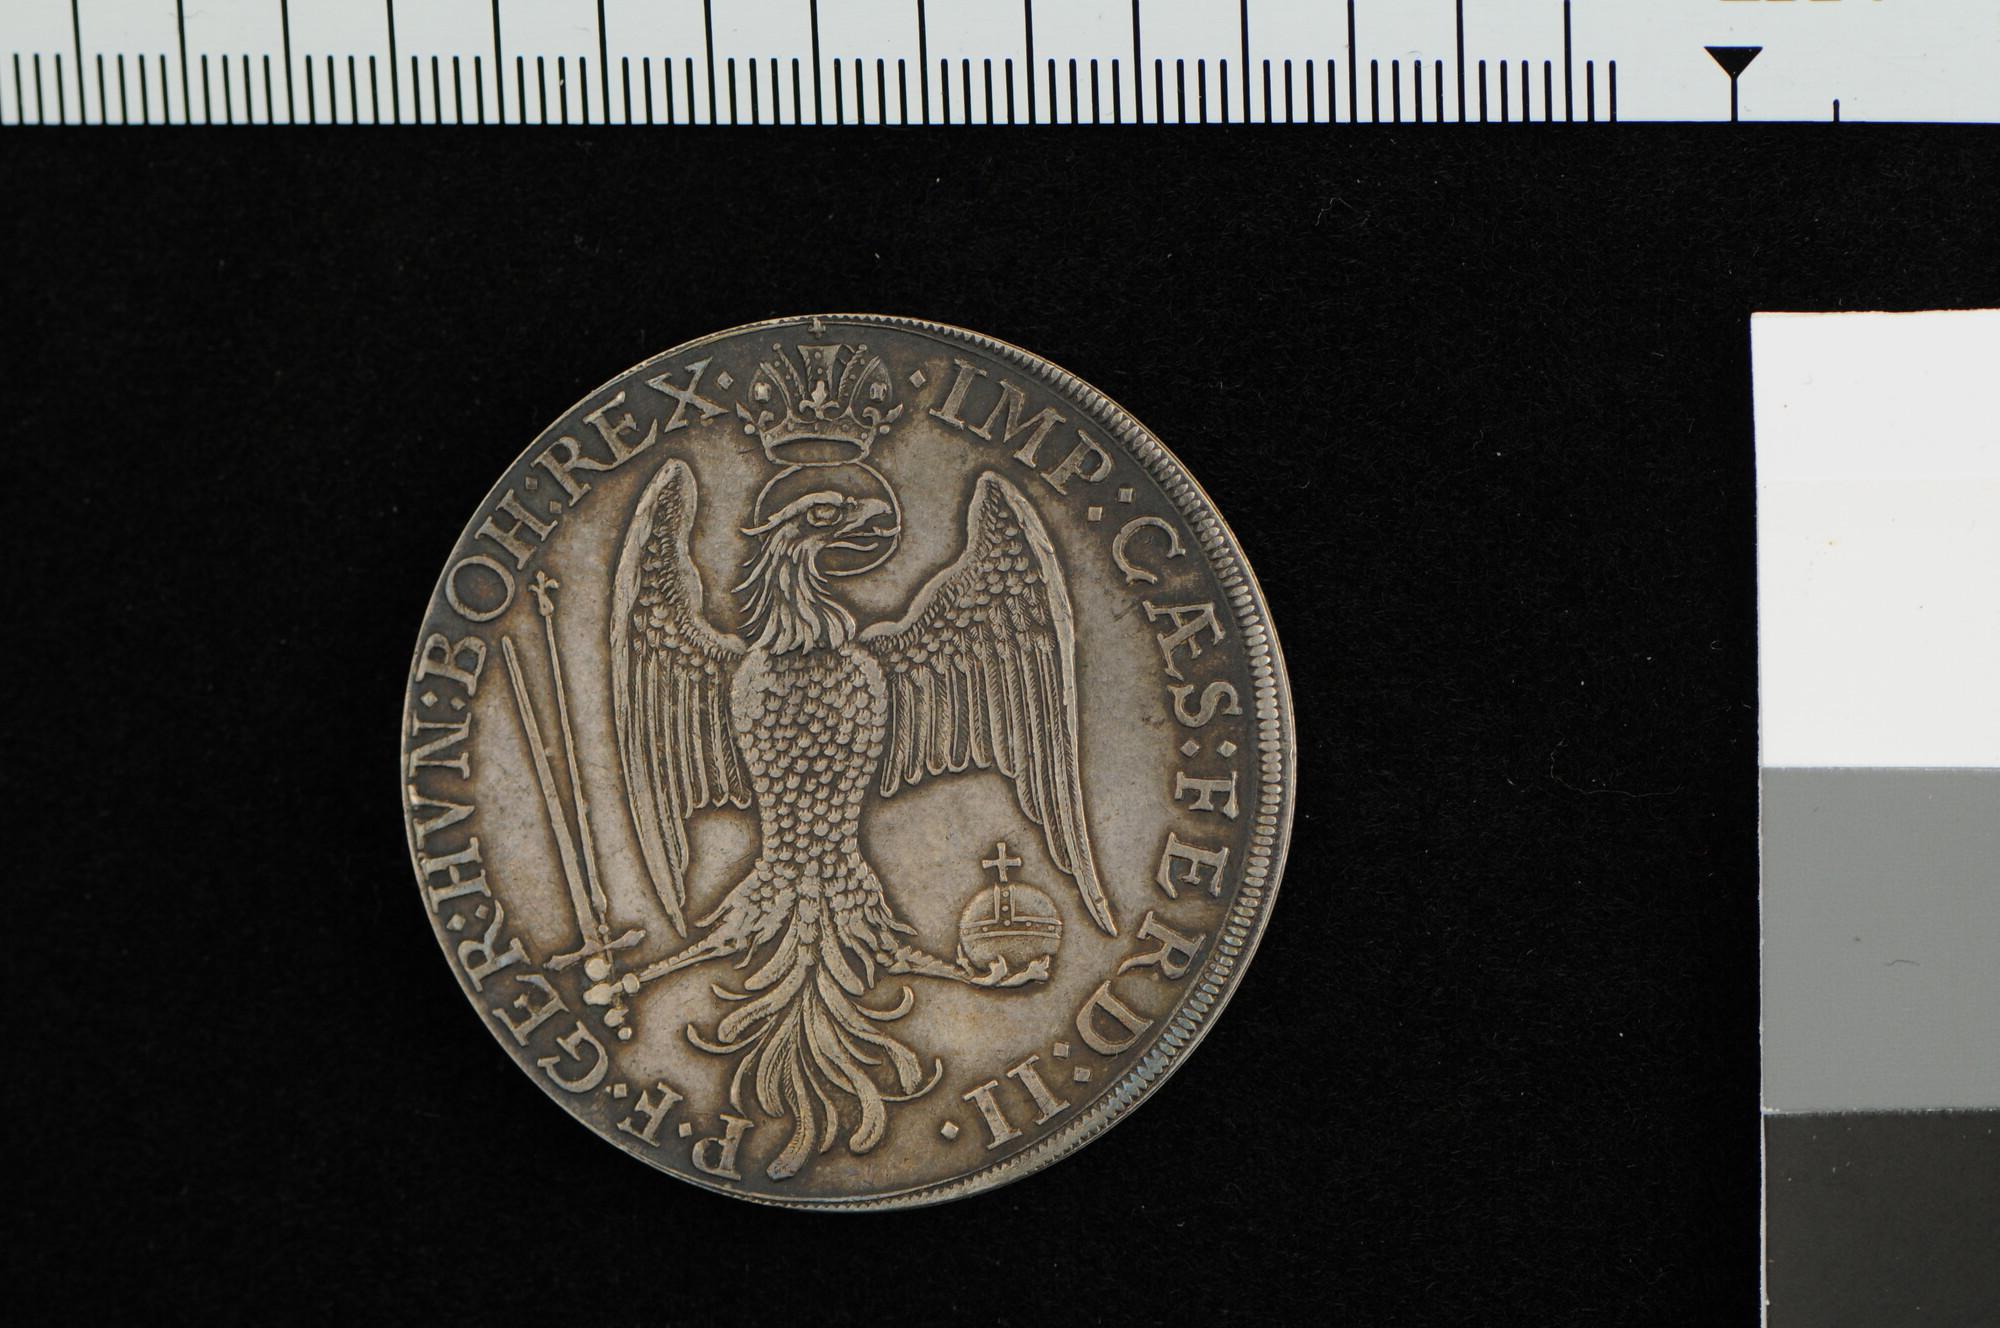 A.4938; Doosje, vervaardigd uit een zilveren munt, met daarin een portret van Isaac Sweers; munt